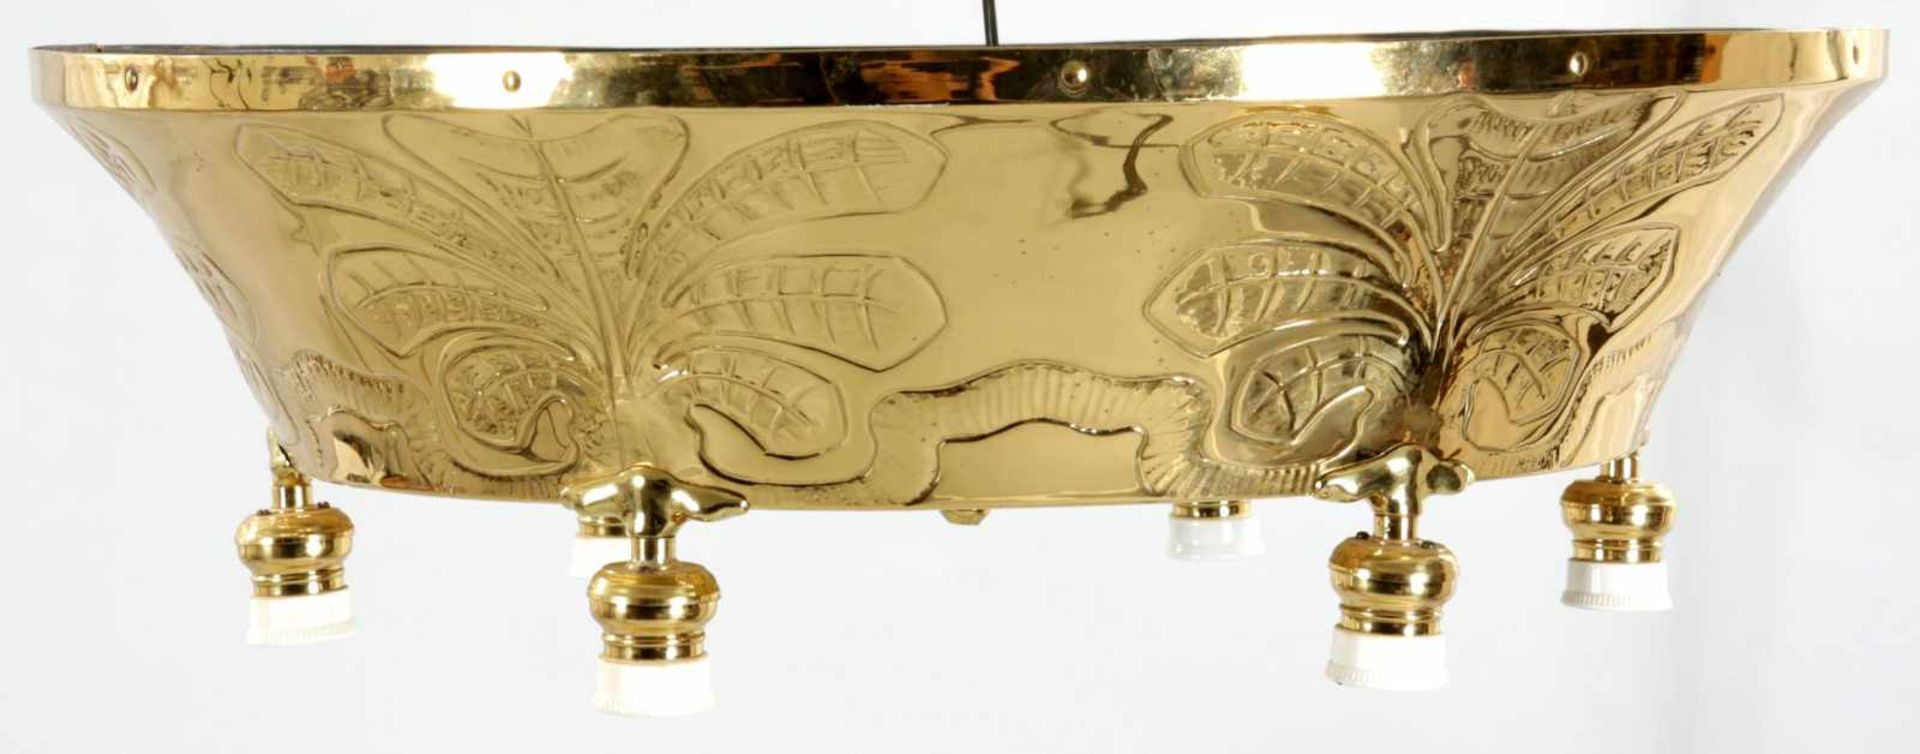 DeckenlampeMessing, 1920er Jahre 6-flg. elektr. Durchbruchkorpus m. 6 Keramikfassungen u.